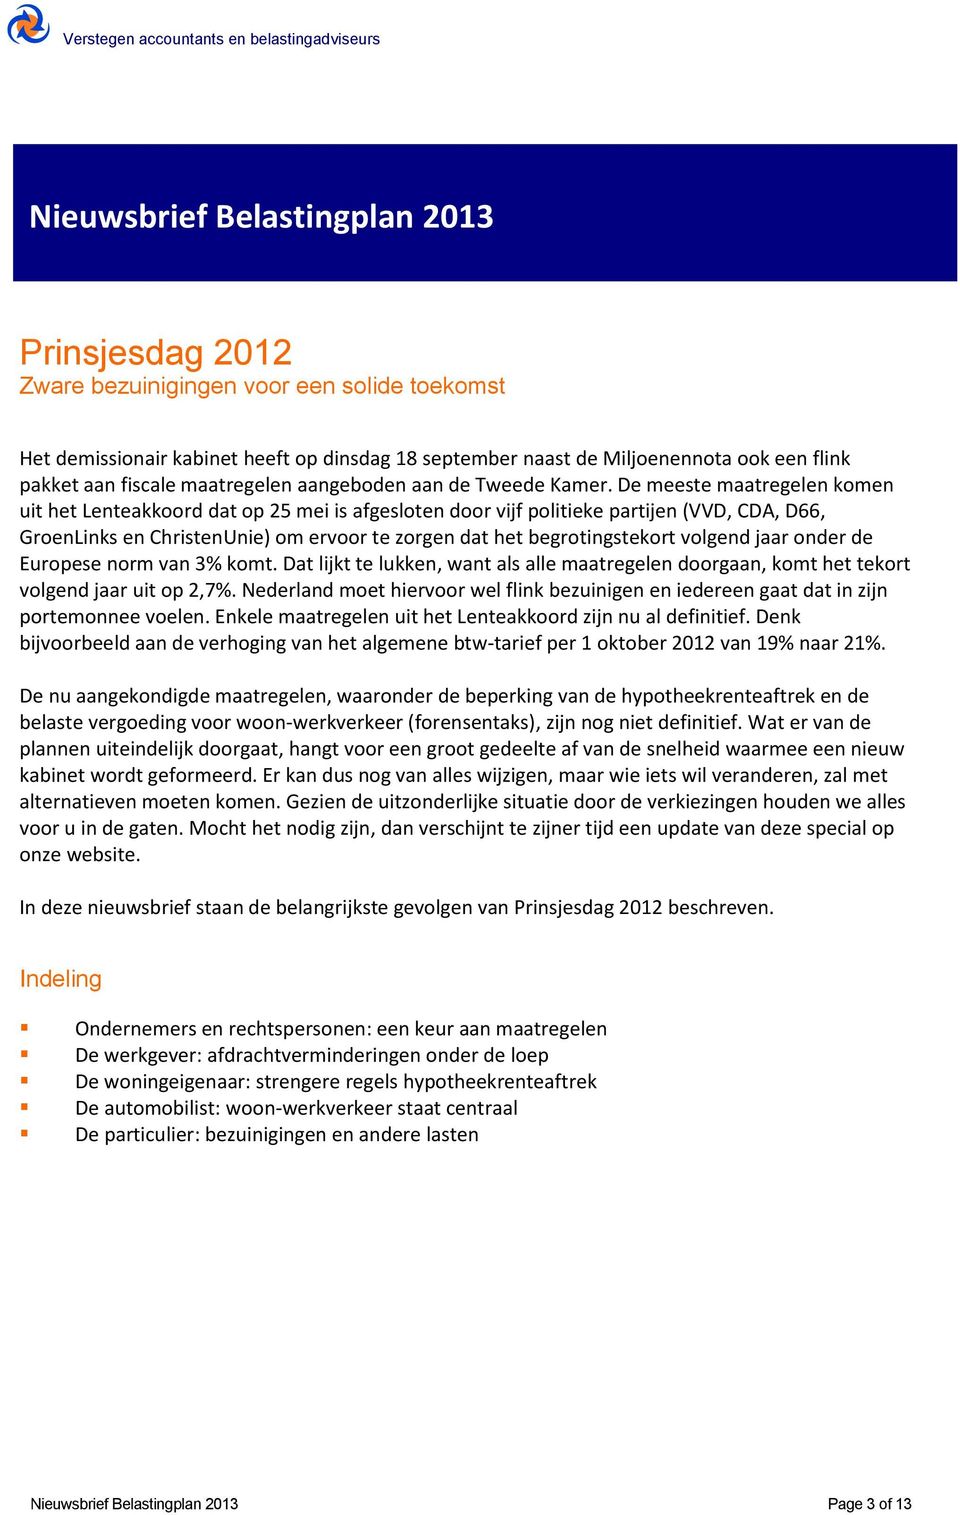 De meeste maatregelen komen uit het Lenteakkoord dat op 25 mei is afgesloten door vijf politieke partijen (VVD, CDA, D66, GroenLinks en ChristenUnie) om ervoor te zorgen dat het begrotingstekort